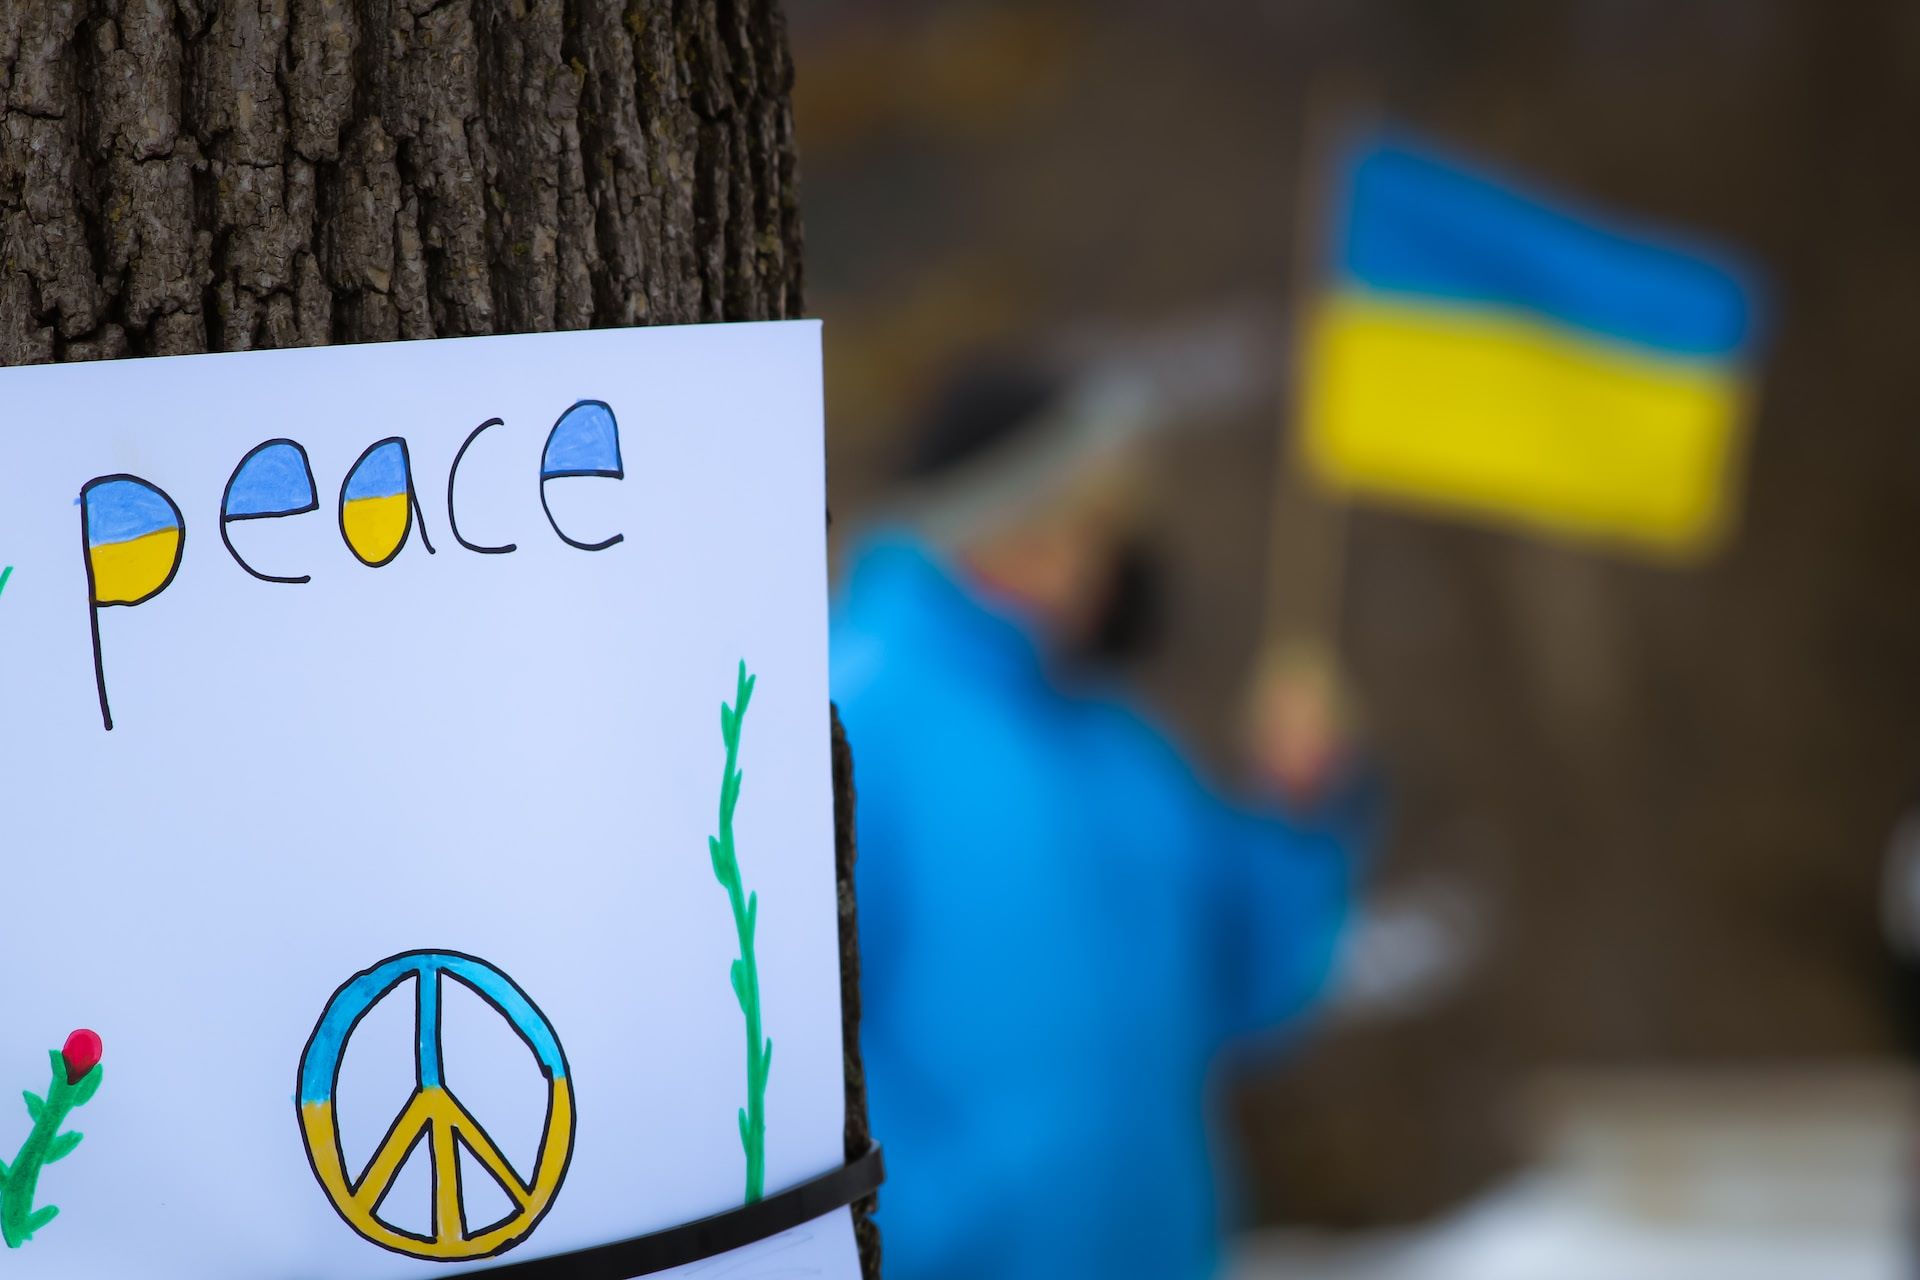 Hangemaltes Schild: "peace" in den Farben der Ukraine